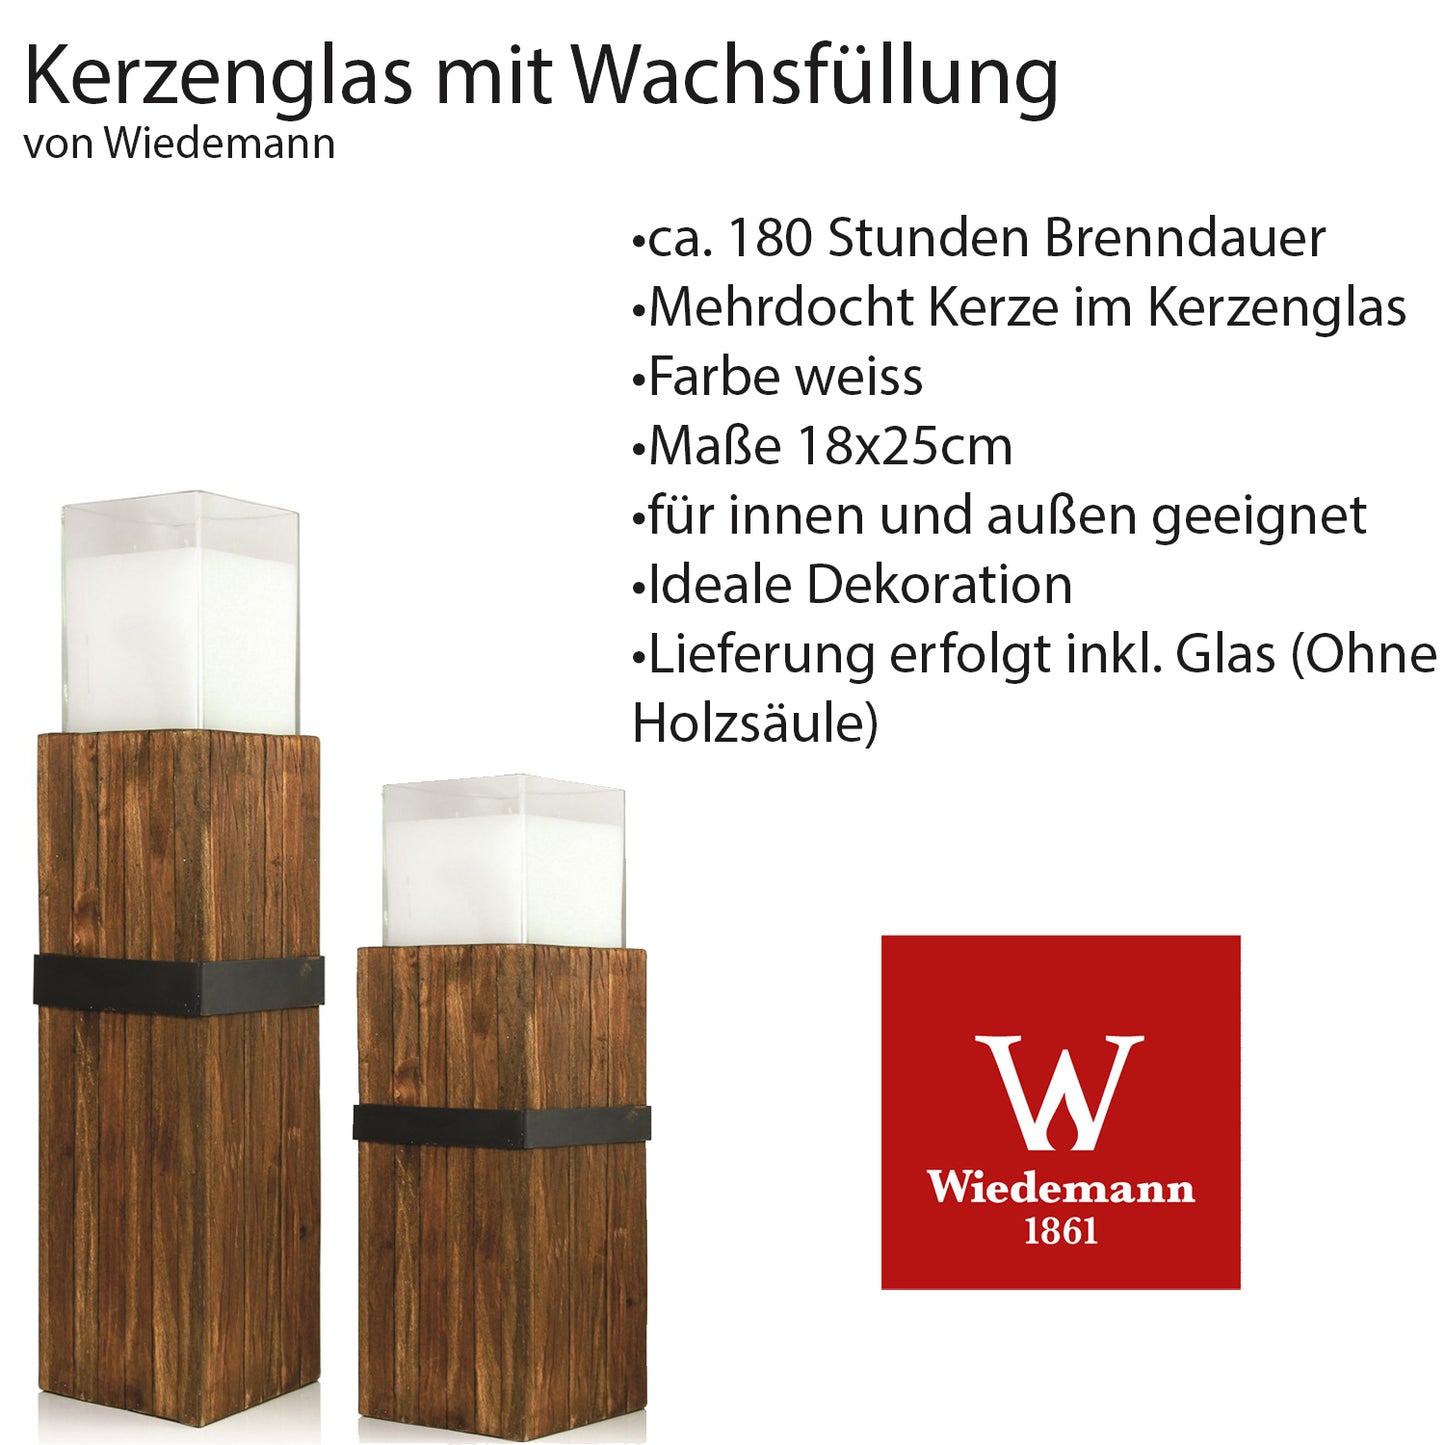 Kerzenglas mit Wachsfüllung für Holzsäule, BxHxT 18 x18 x 25 cm, weiß